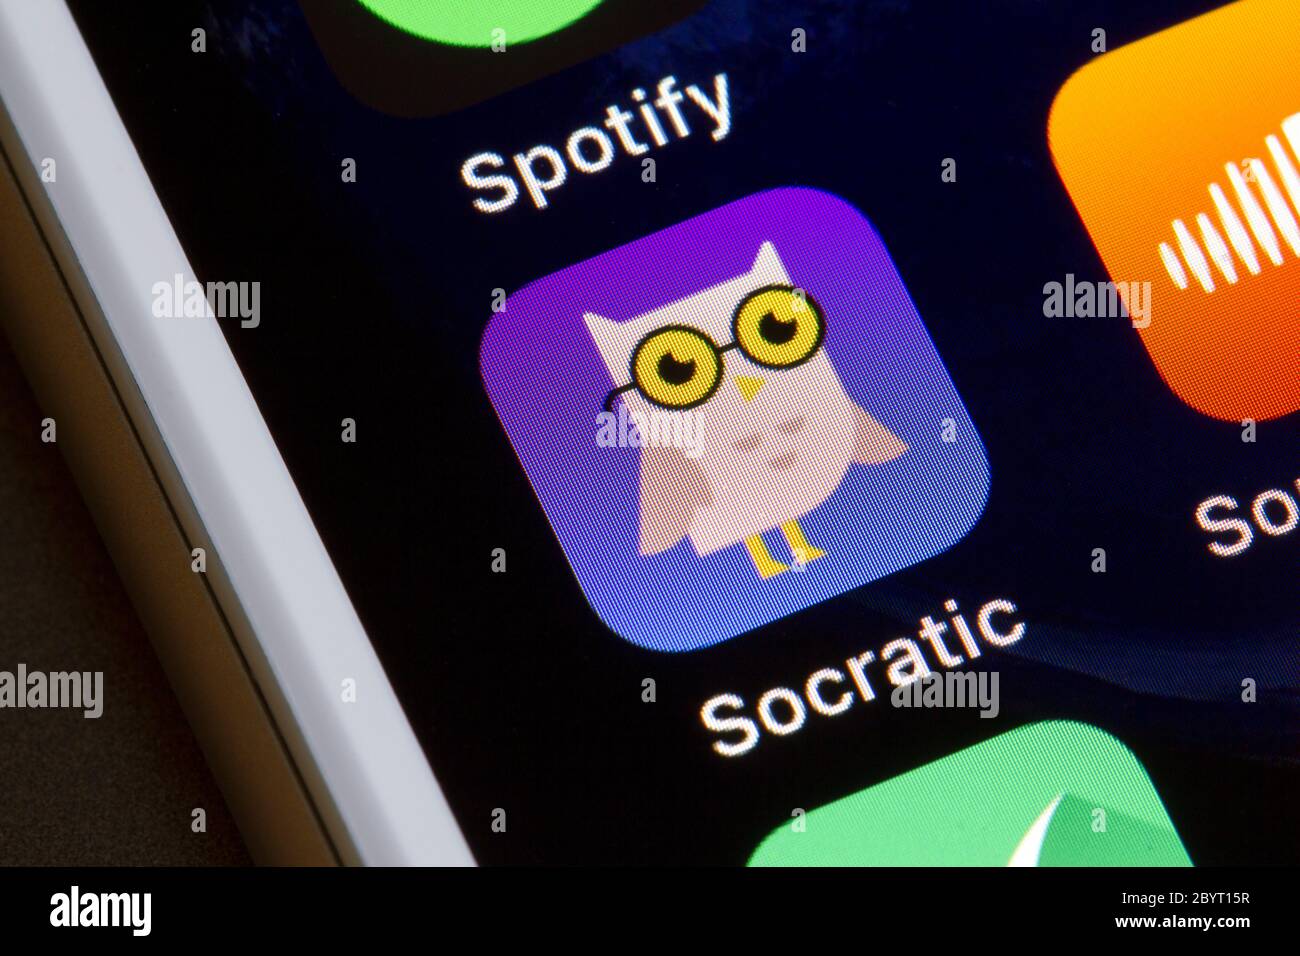 Sokratic App-Symbol ist auf einem iPhone zu sehen. Sokratic von Google nutzt KI-Technologie, um Studenten bei ihren Hausaufgaben zu helfen, indem sie Bildungsressourcen zur Verfügung stellt. Stockfoto